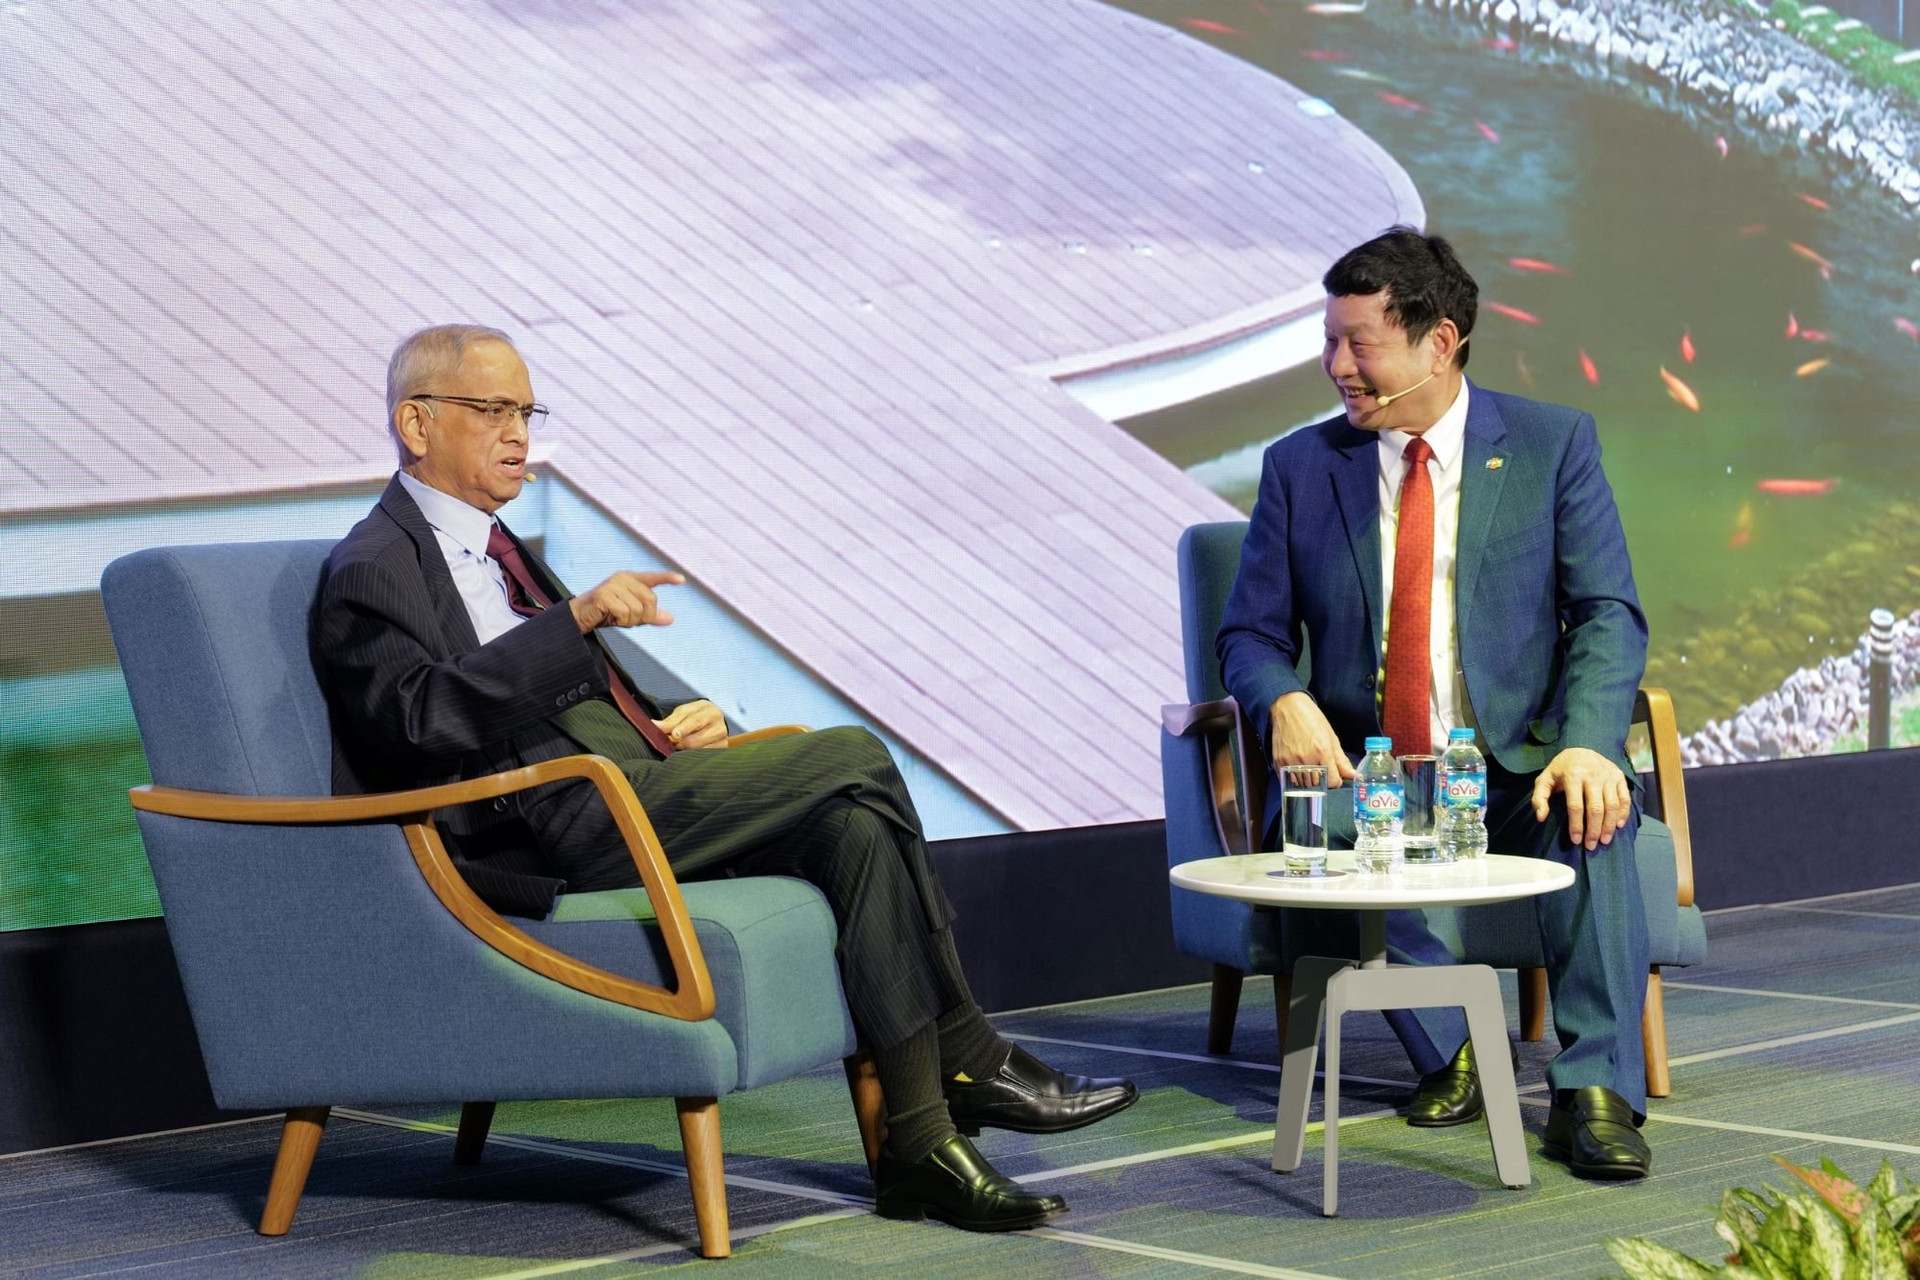 Cuộc đối thoại giữa Chủ tịch FPT Trương Gia Bình và Nhà sáng lập Infosys. Ảnh: Ngọc Thành/VnExpress